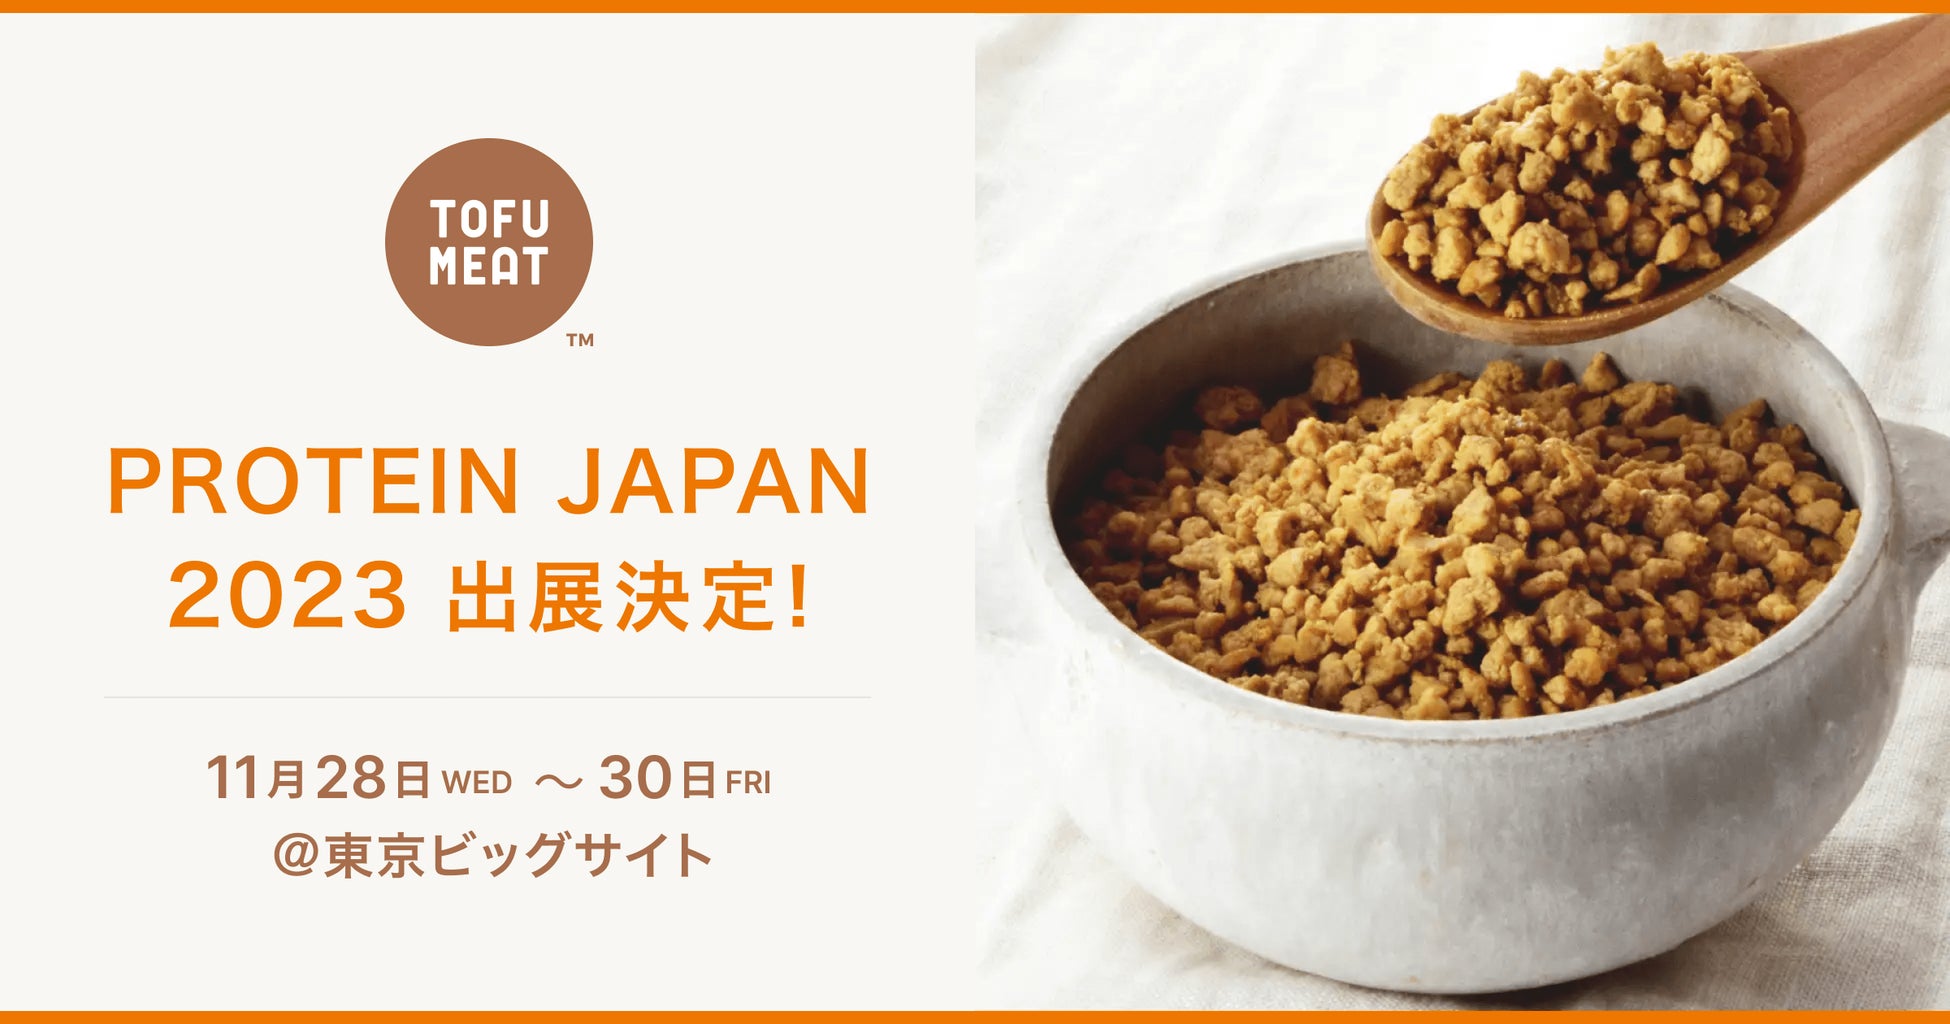 豆腐から作る新食材「TOFU MEAT」がタンパク質系食品・素材が一堂に集まる専門展【PROTEIN JAPAN2023】に初出展